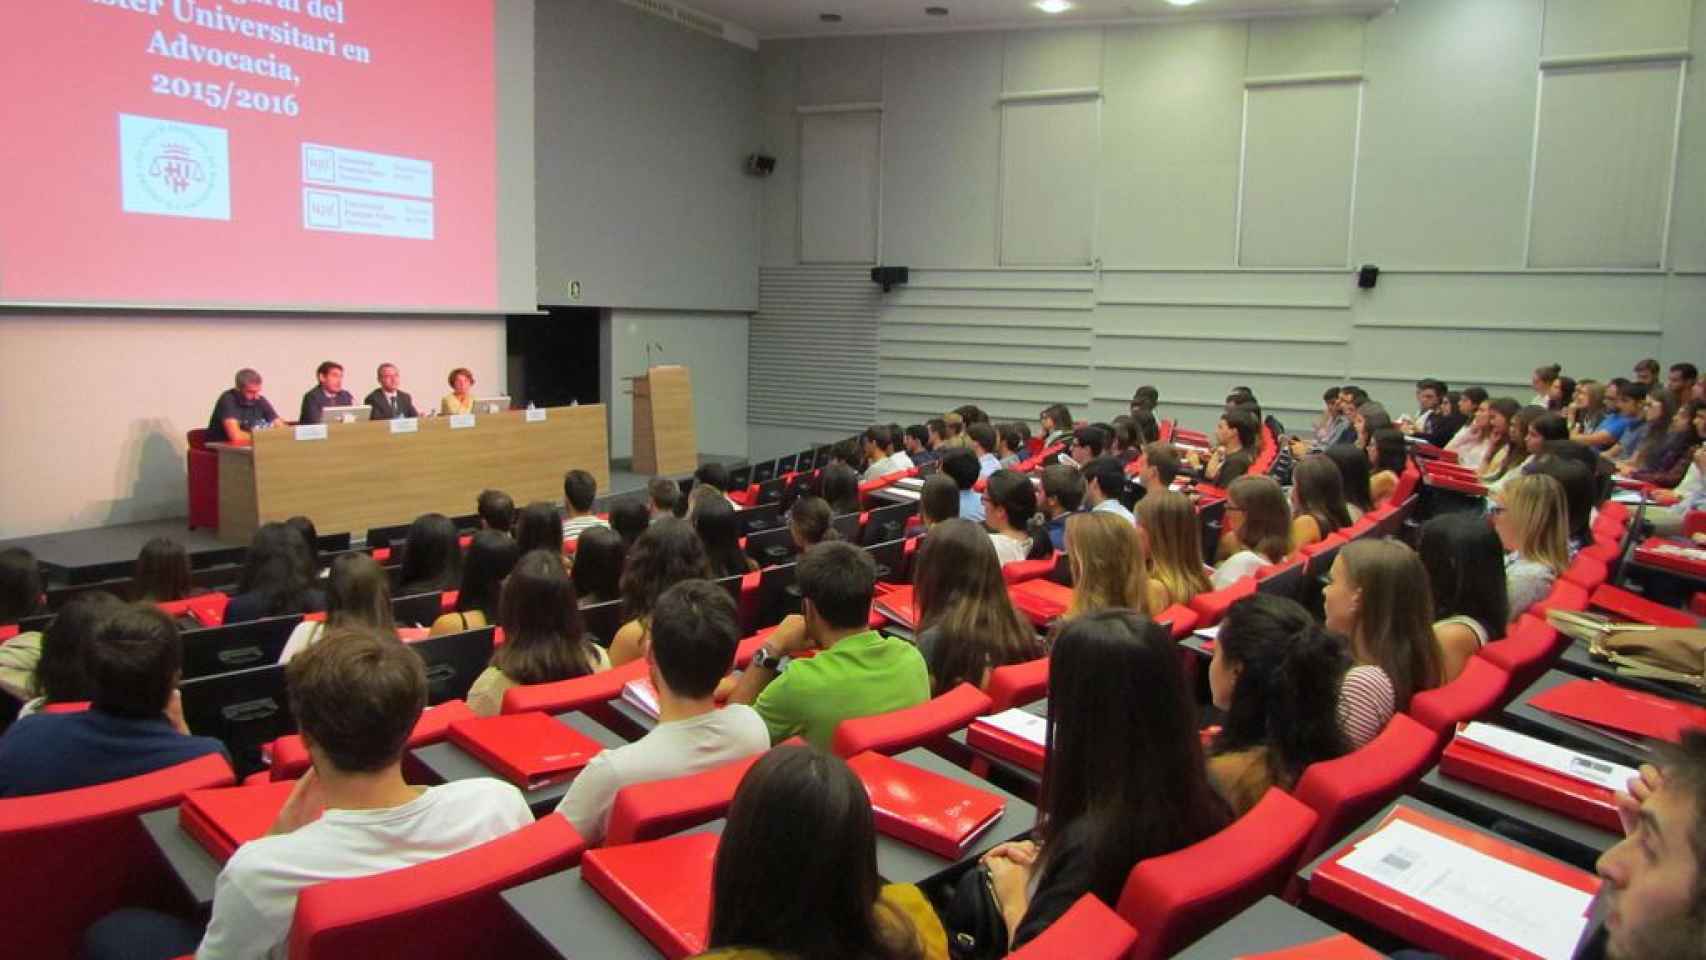 Estudiantes de máster en una universidad pública española